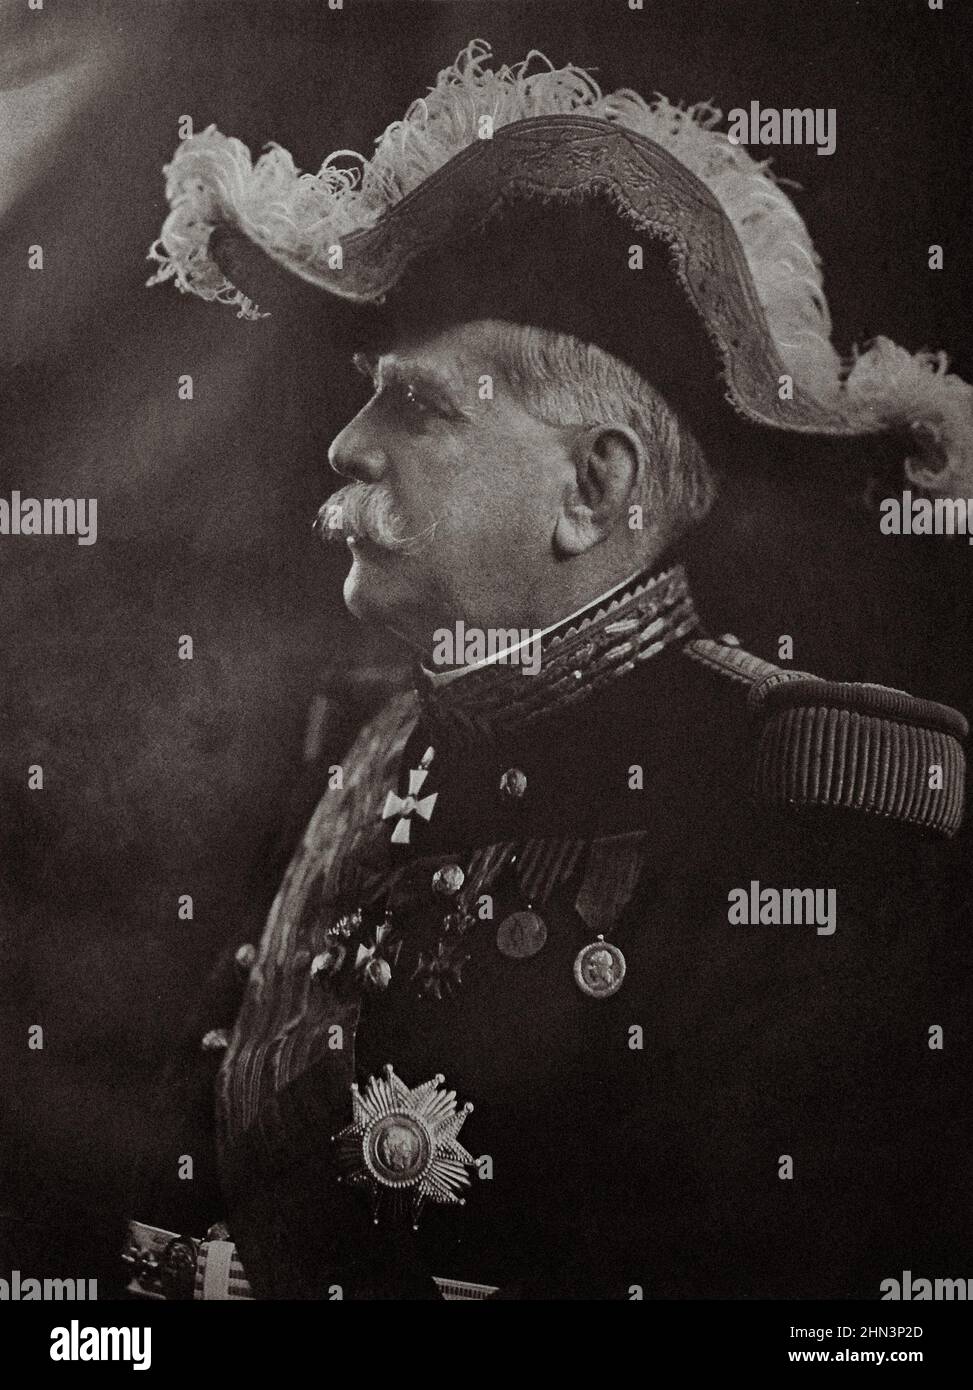 Foto d'epoca del maresciallo Joseph Joffre. Joseph Jacques Césaire Joffre (1852-1931) è stato un generale francese che ha servito come comandante in capo della Francia per Foto Stock